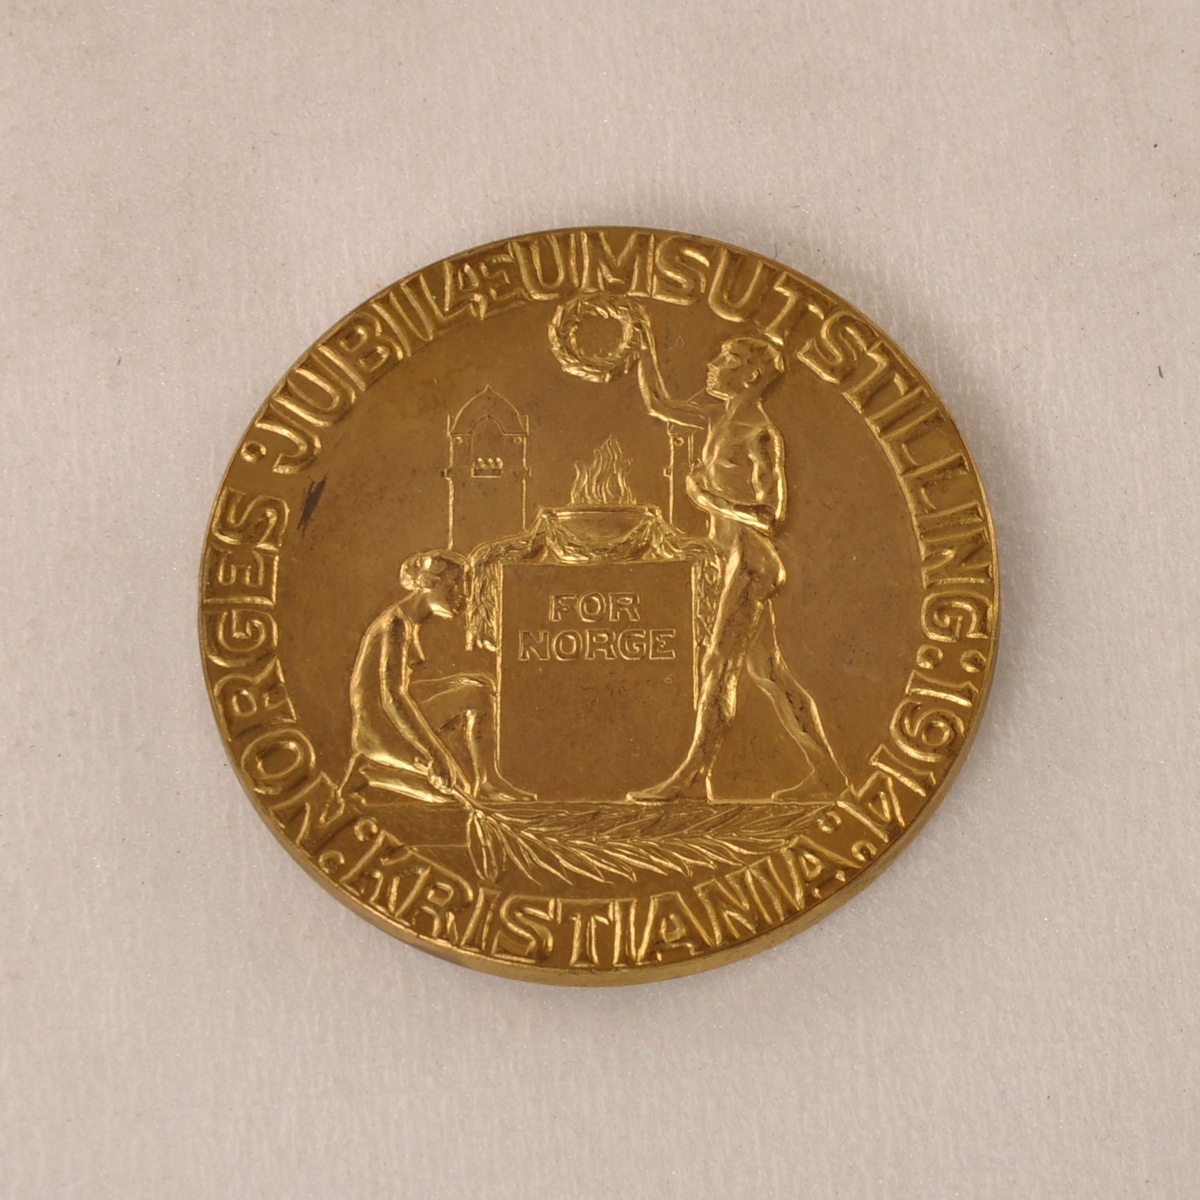 2 (konforme) medaljer til smørfabrikken Halden (senere Fredrikshald, disp. Fr. Gjersøe) ved Norges jubileumsutstilling i Kristiania 1914